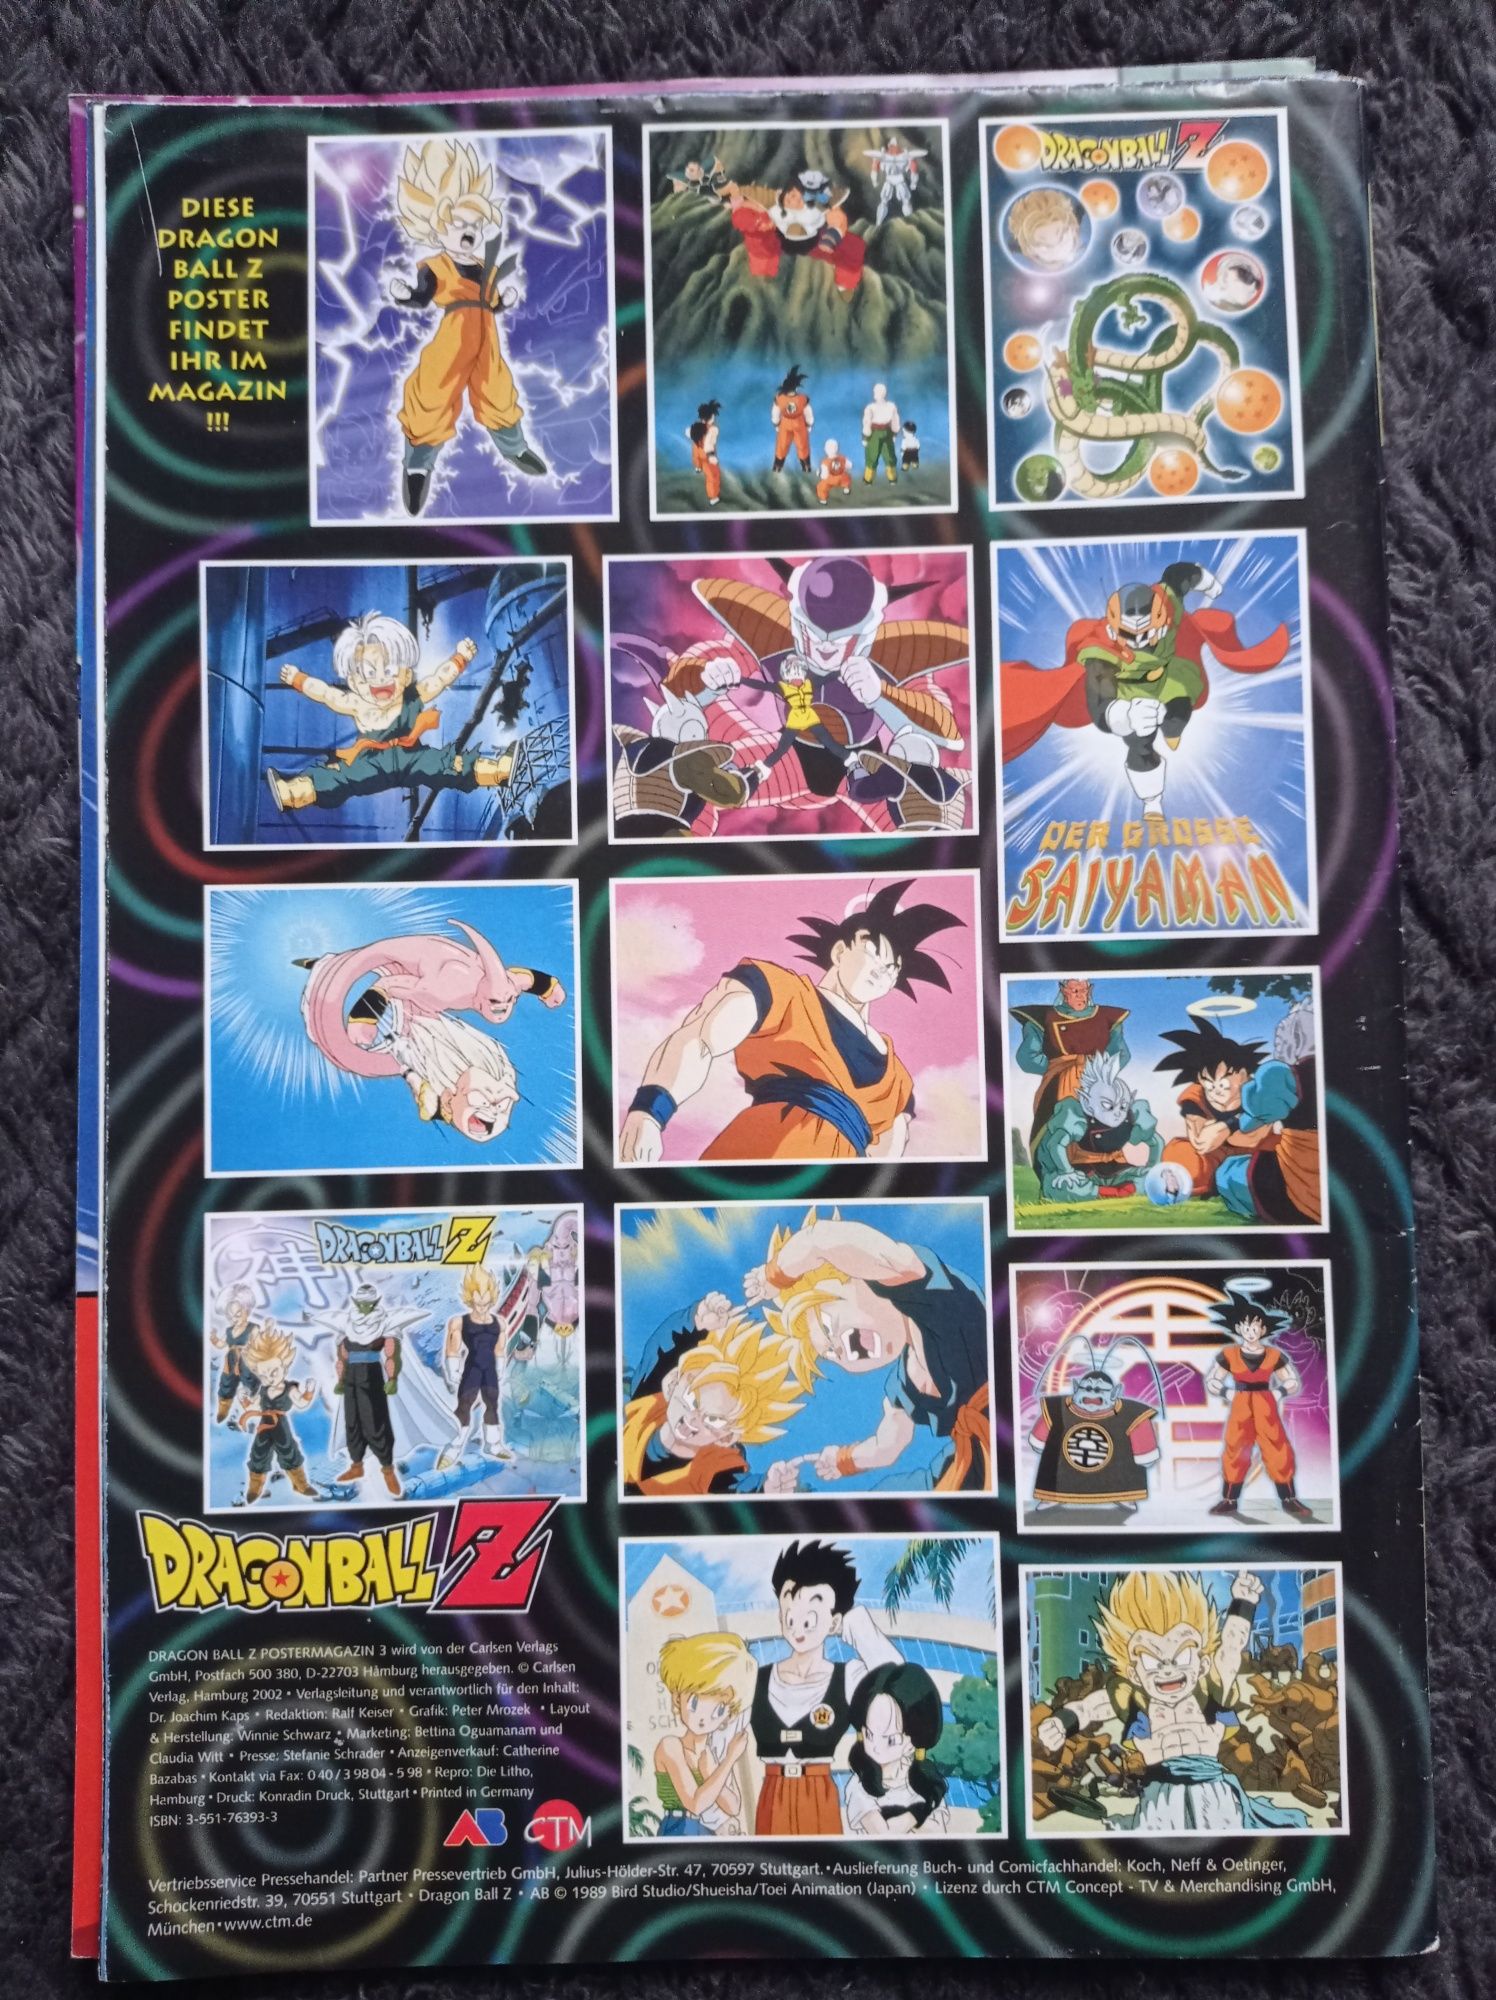 14 plakatów Dragon Ball Carlsen Comics wydanie specjalne